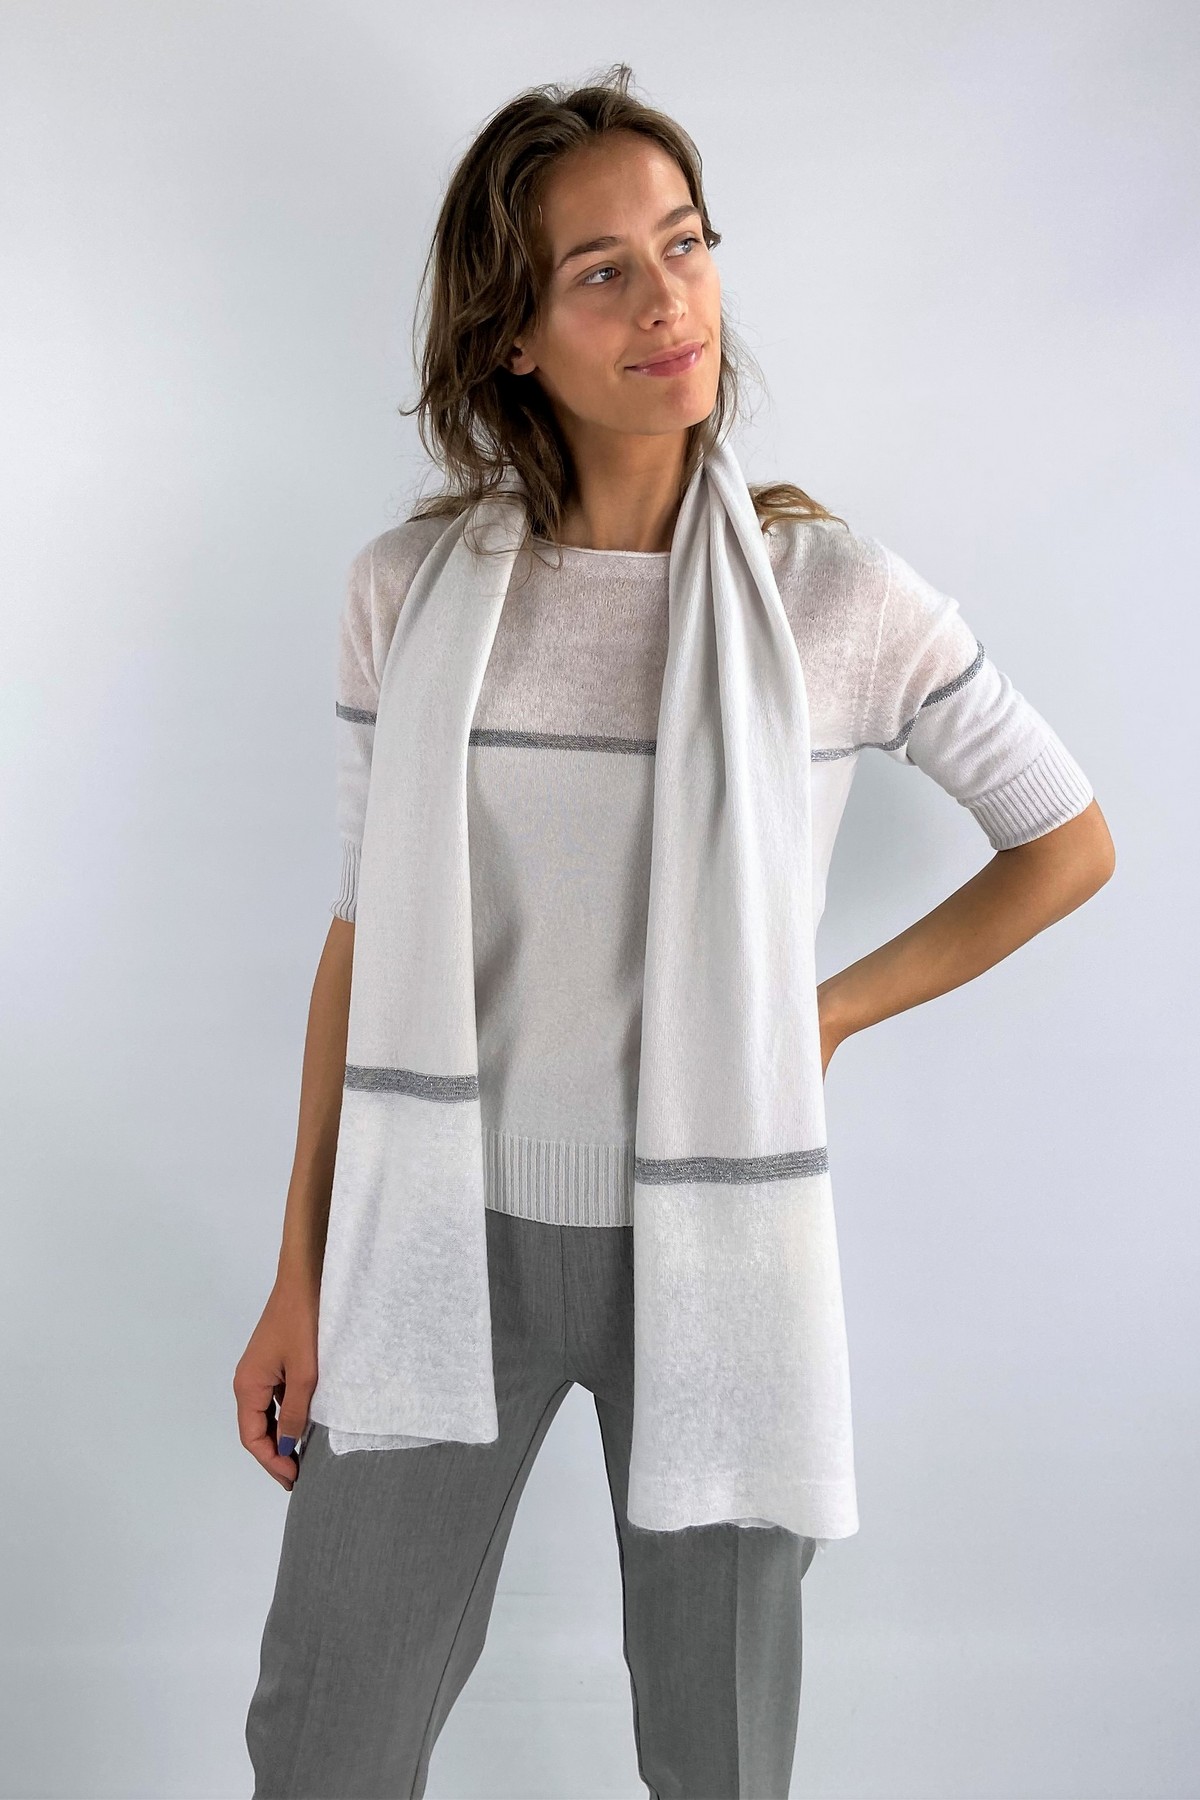 Sjaal cashmere/mohair strip in de kleur wit grijs van het merk D